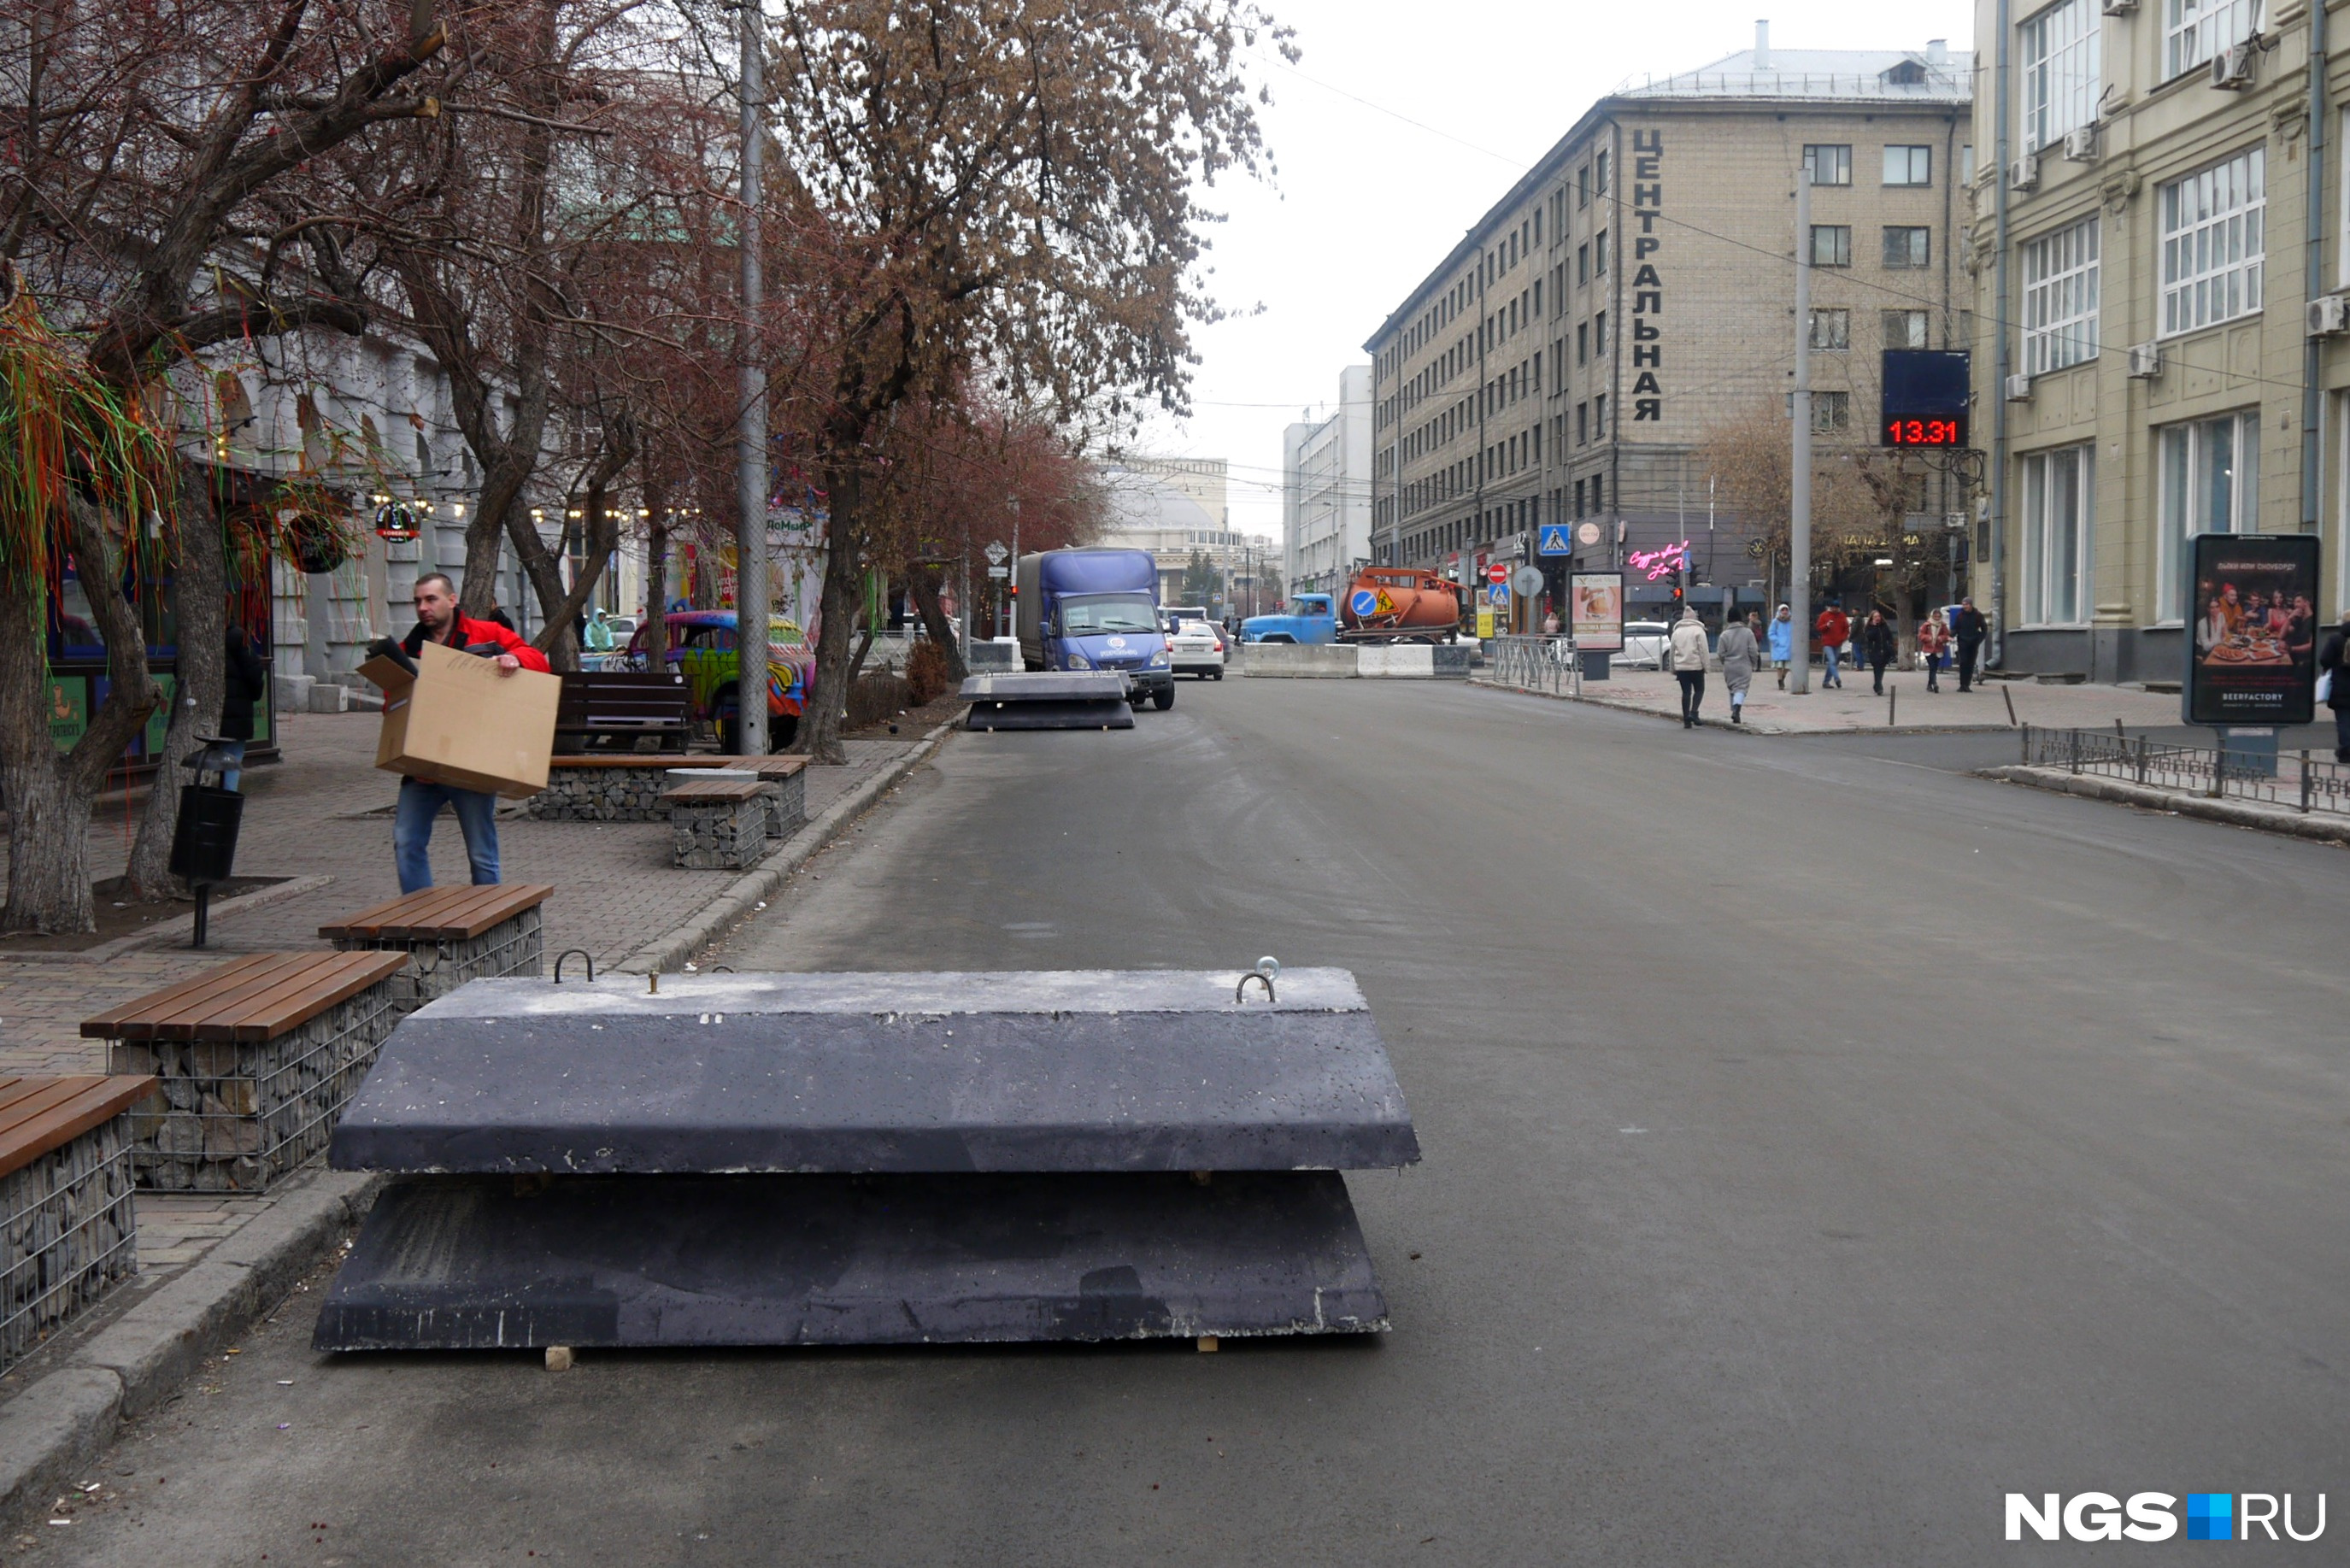 Улица Ленина сегодня — с бетонными конструкциями, напоминающими гробы